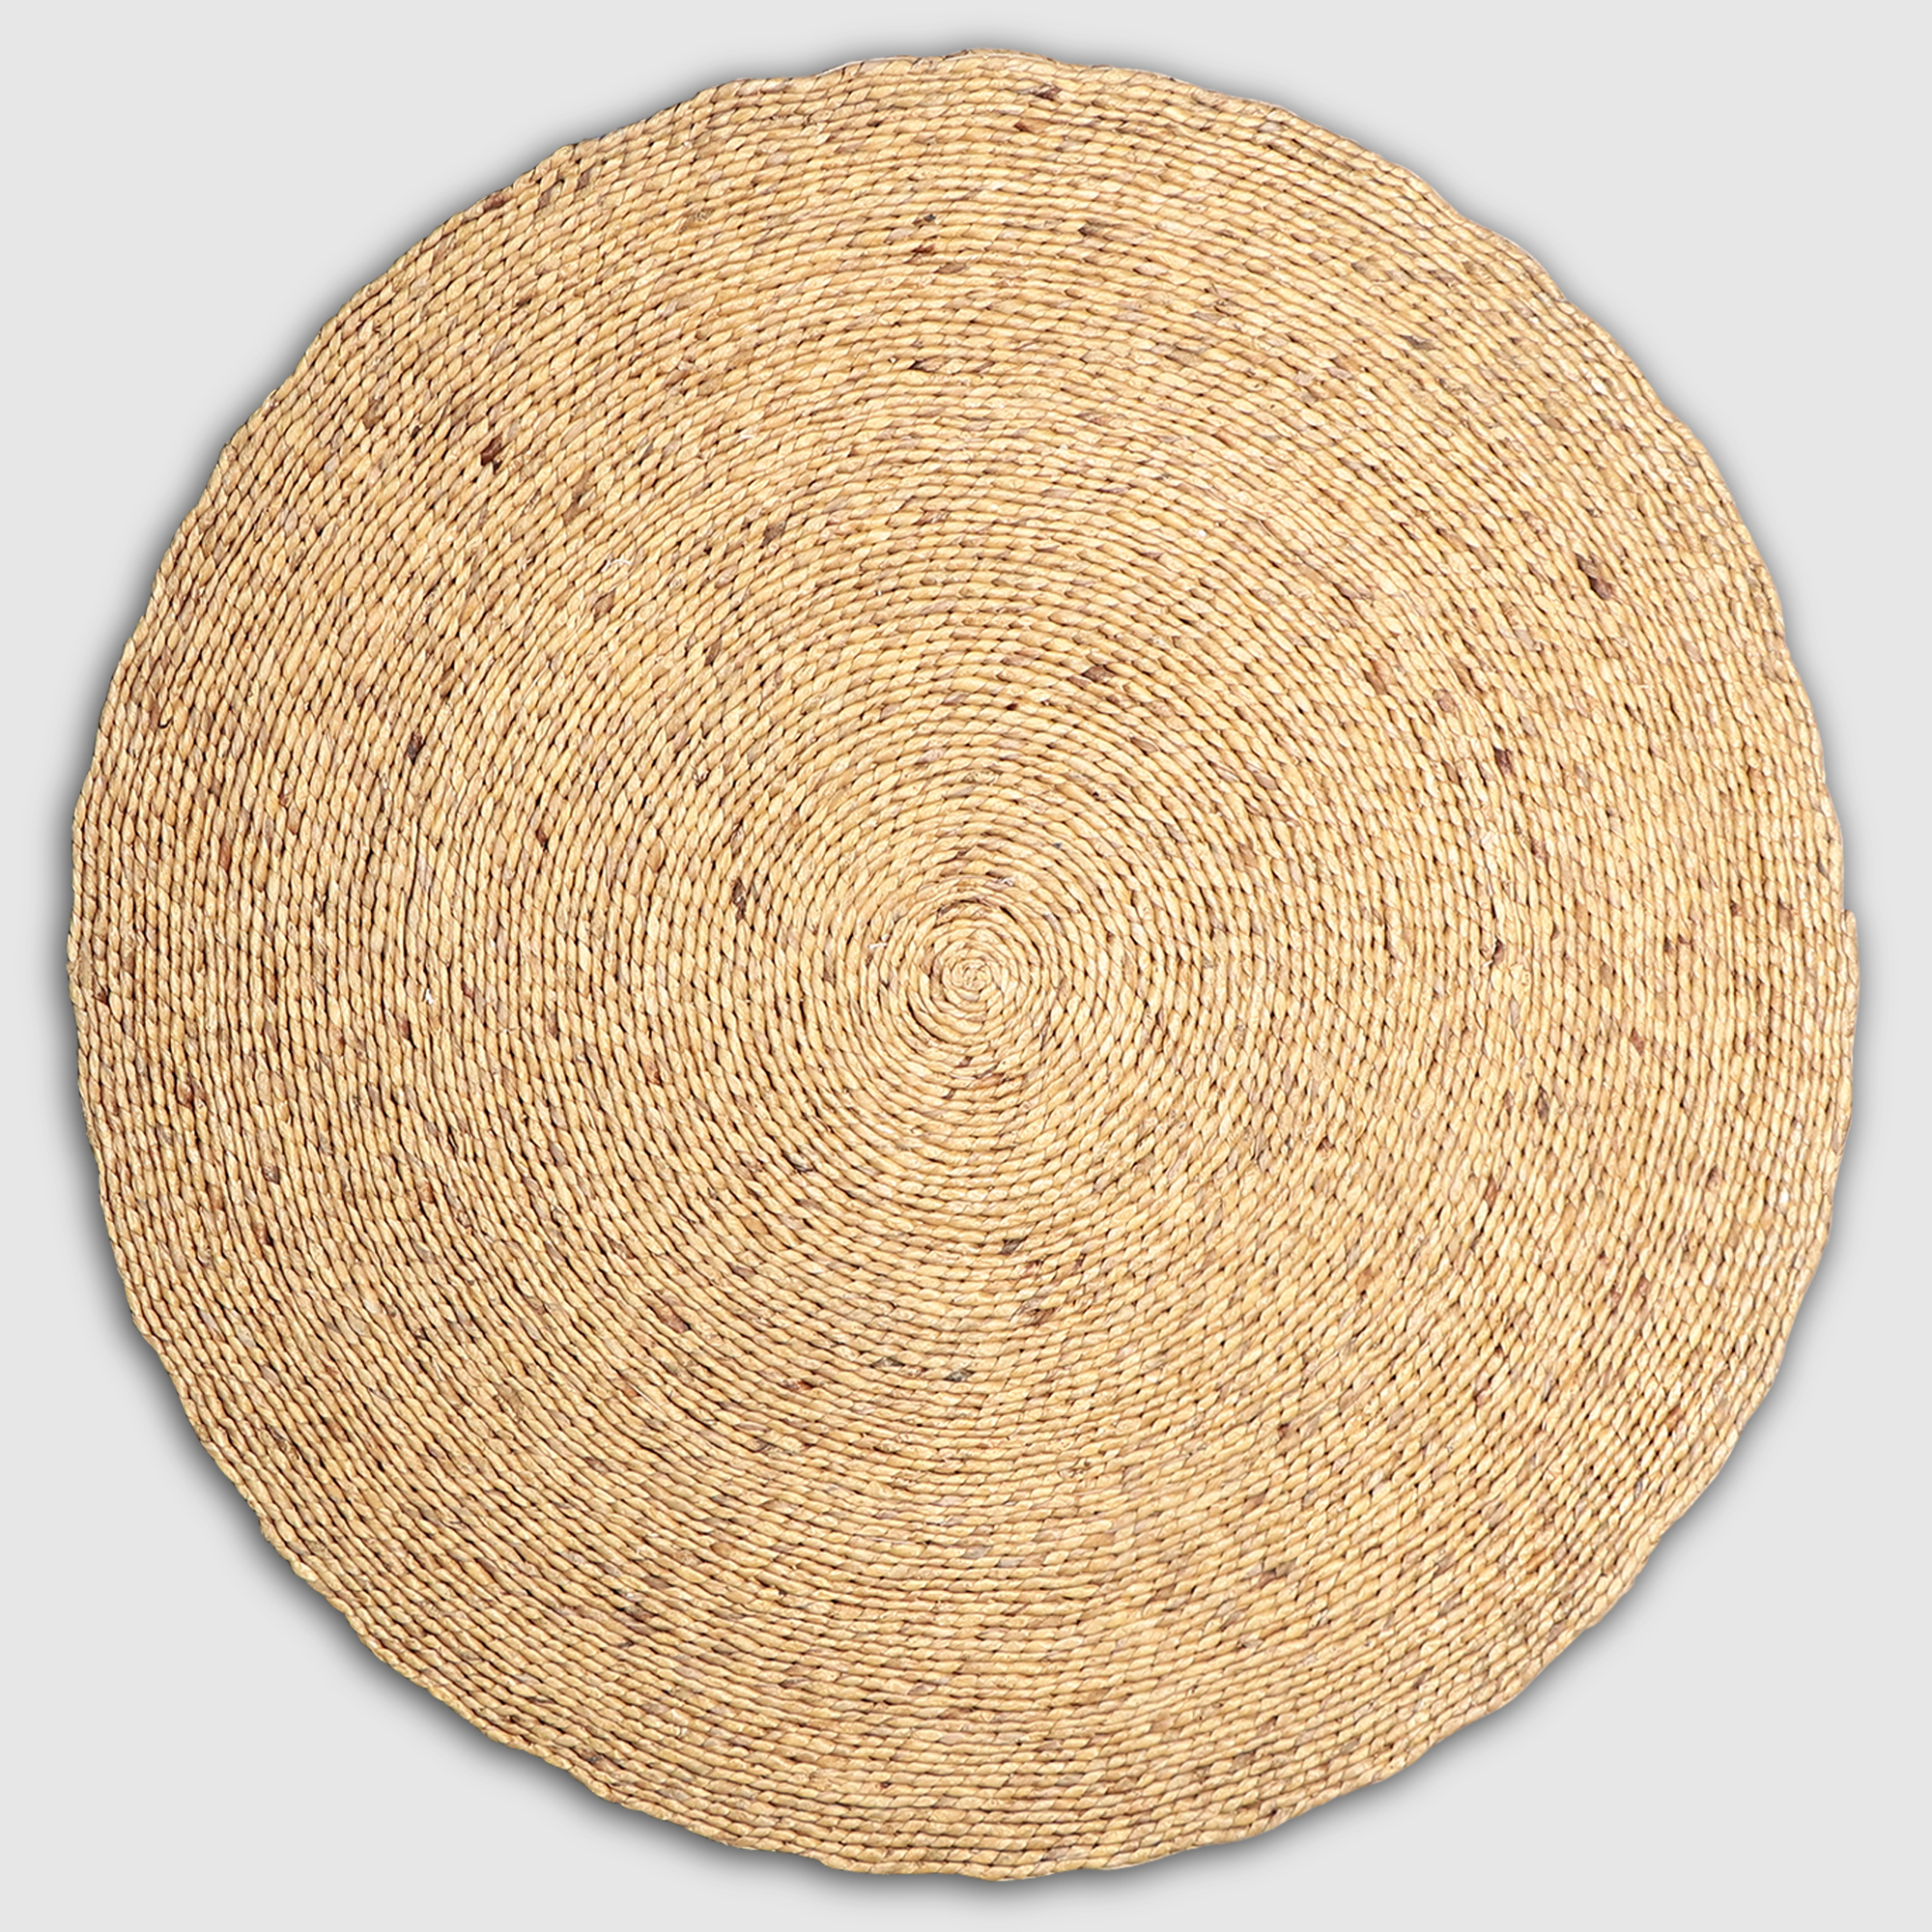 Коврик Rattan grand rug tenun nagan, песочный, д 120 см